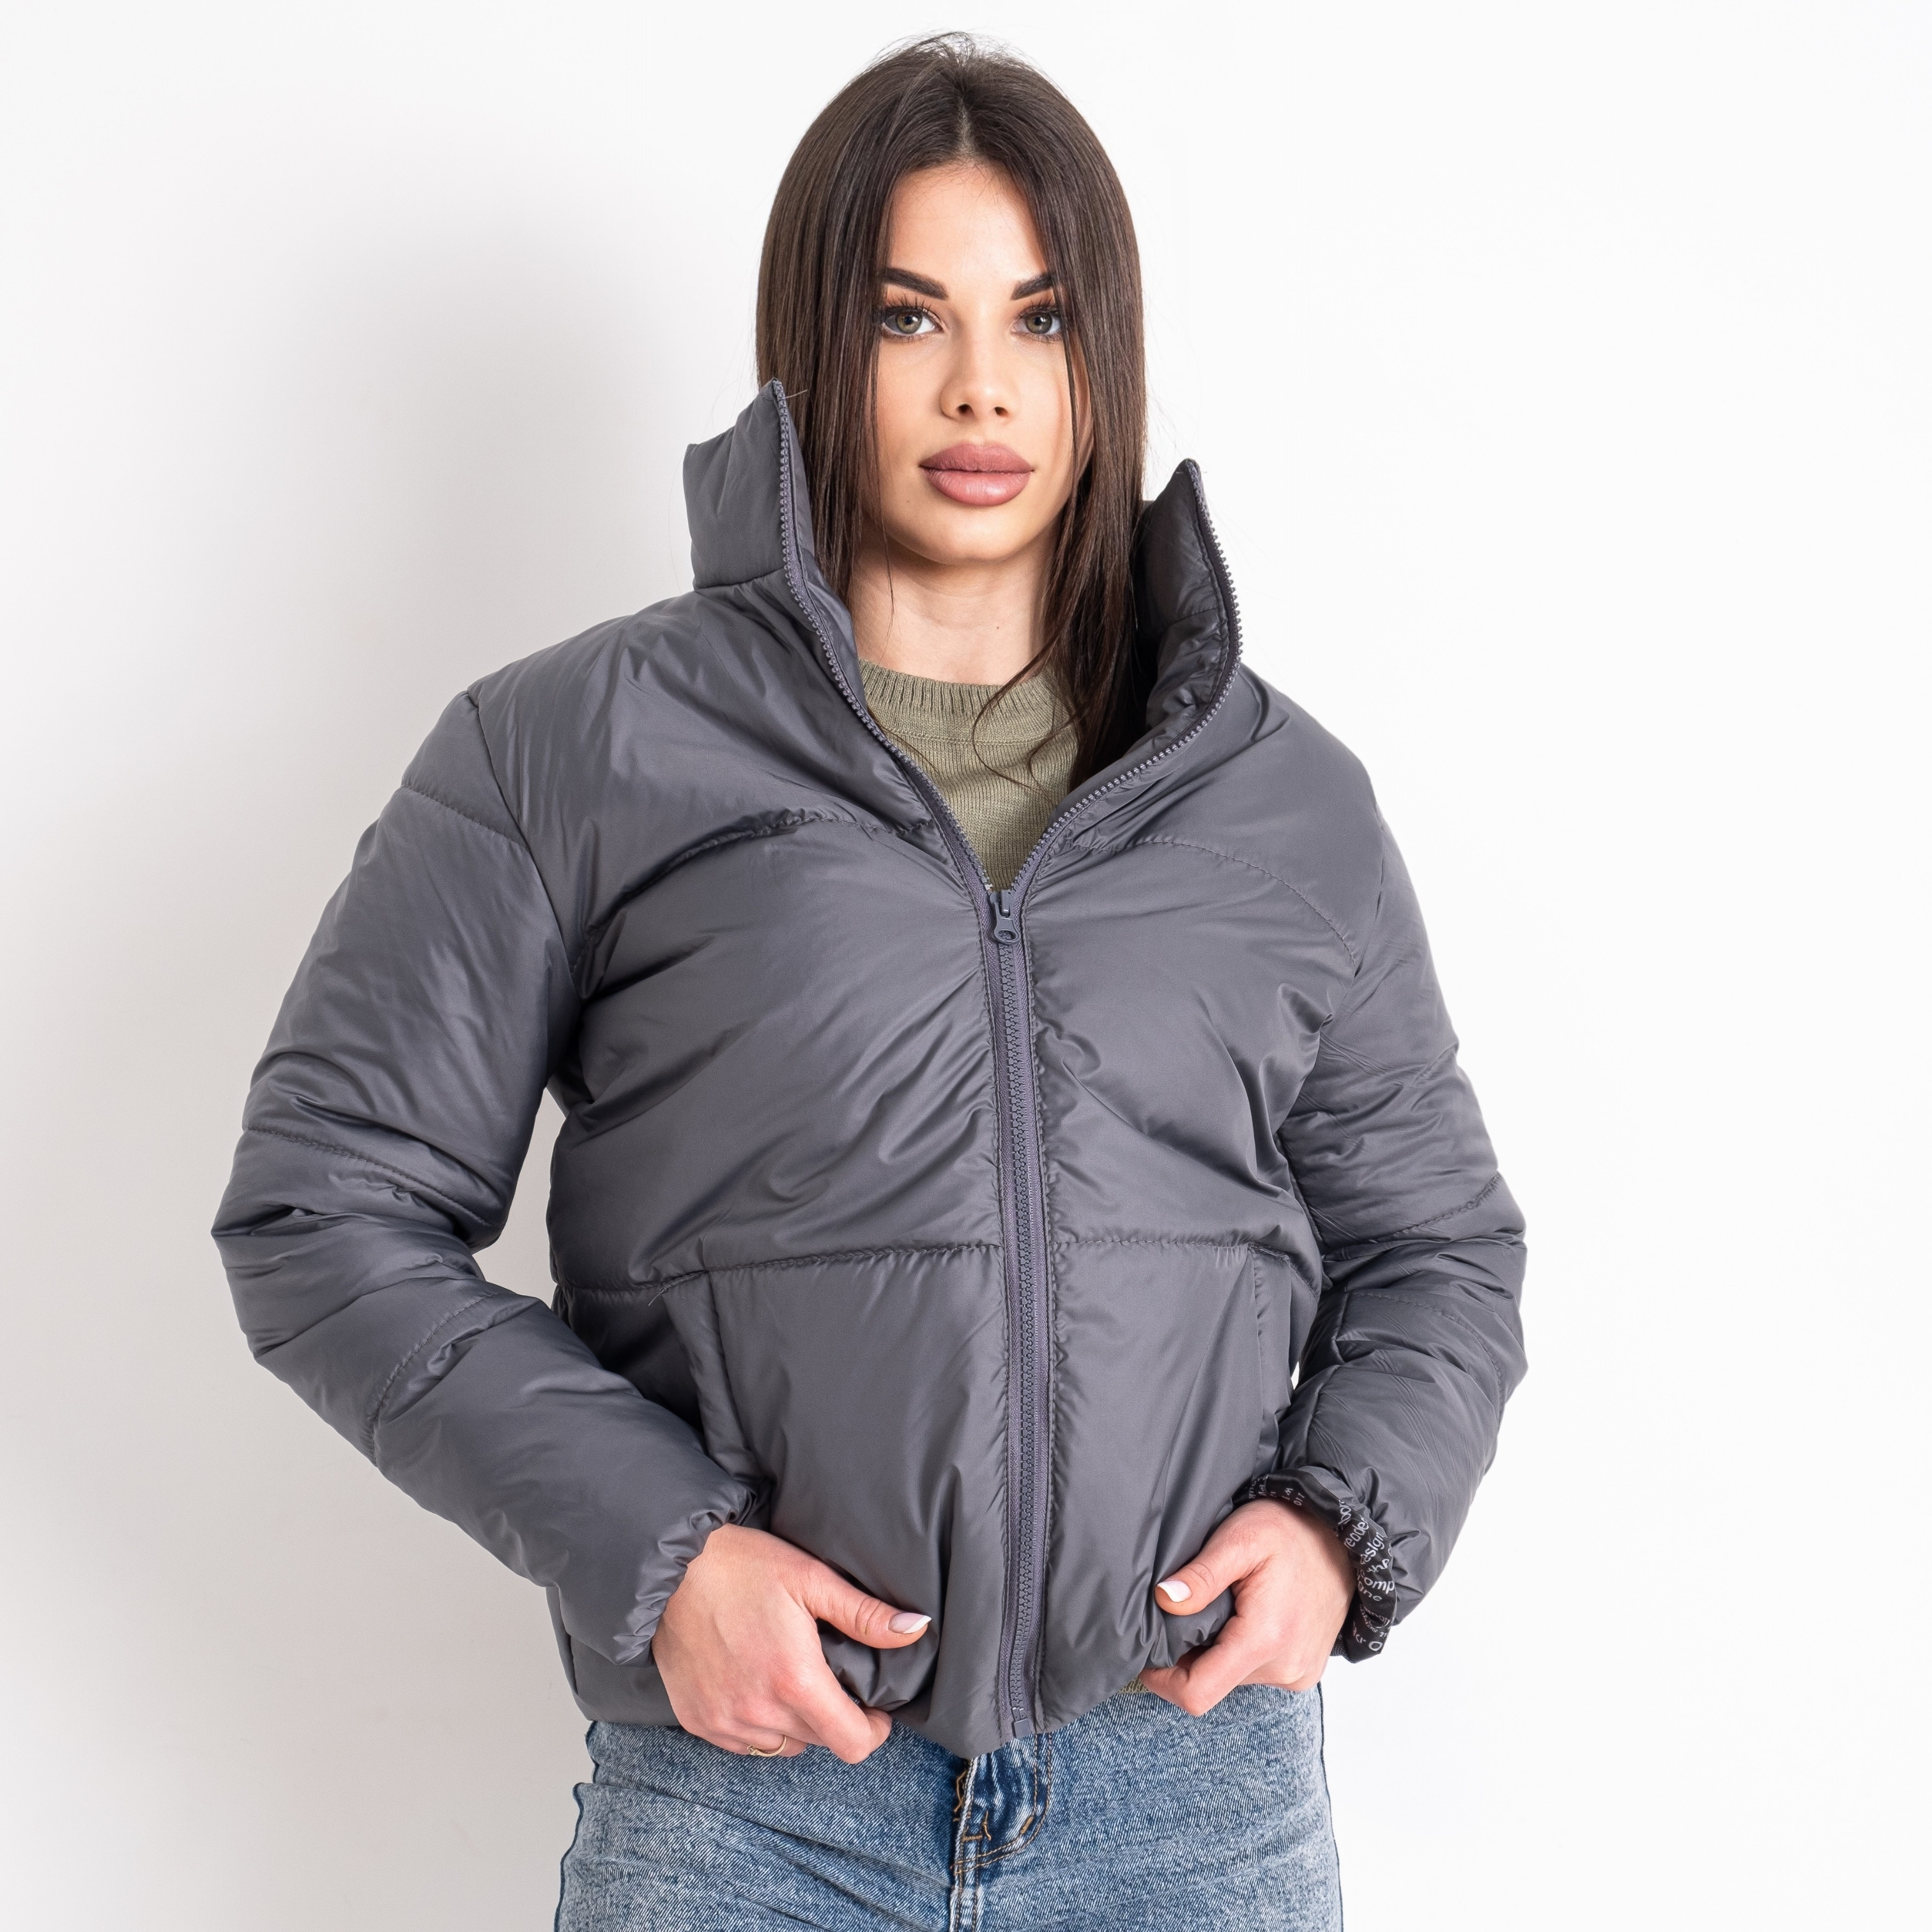 0420-66 серая женская куртка (5'TH AVENUE, синтепон, 4 ед. размеры норма: 42. 44. 46. 48)      